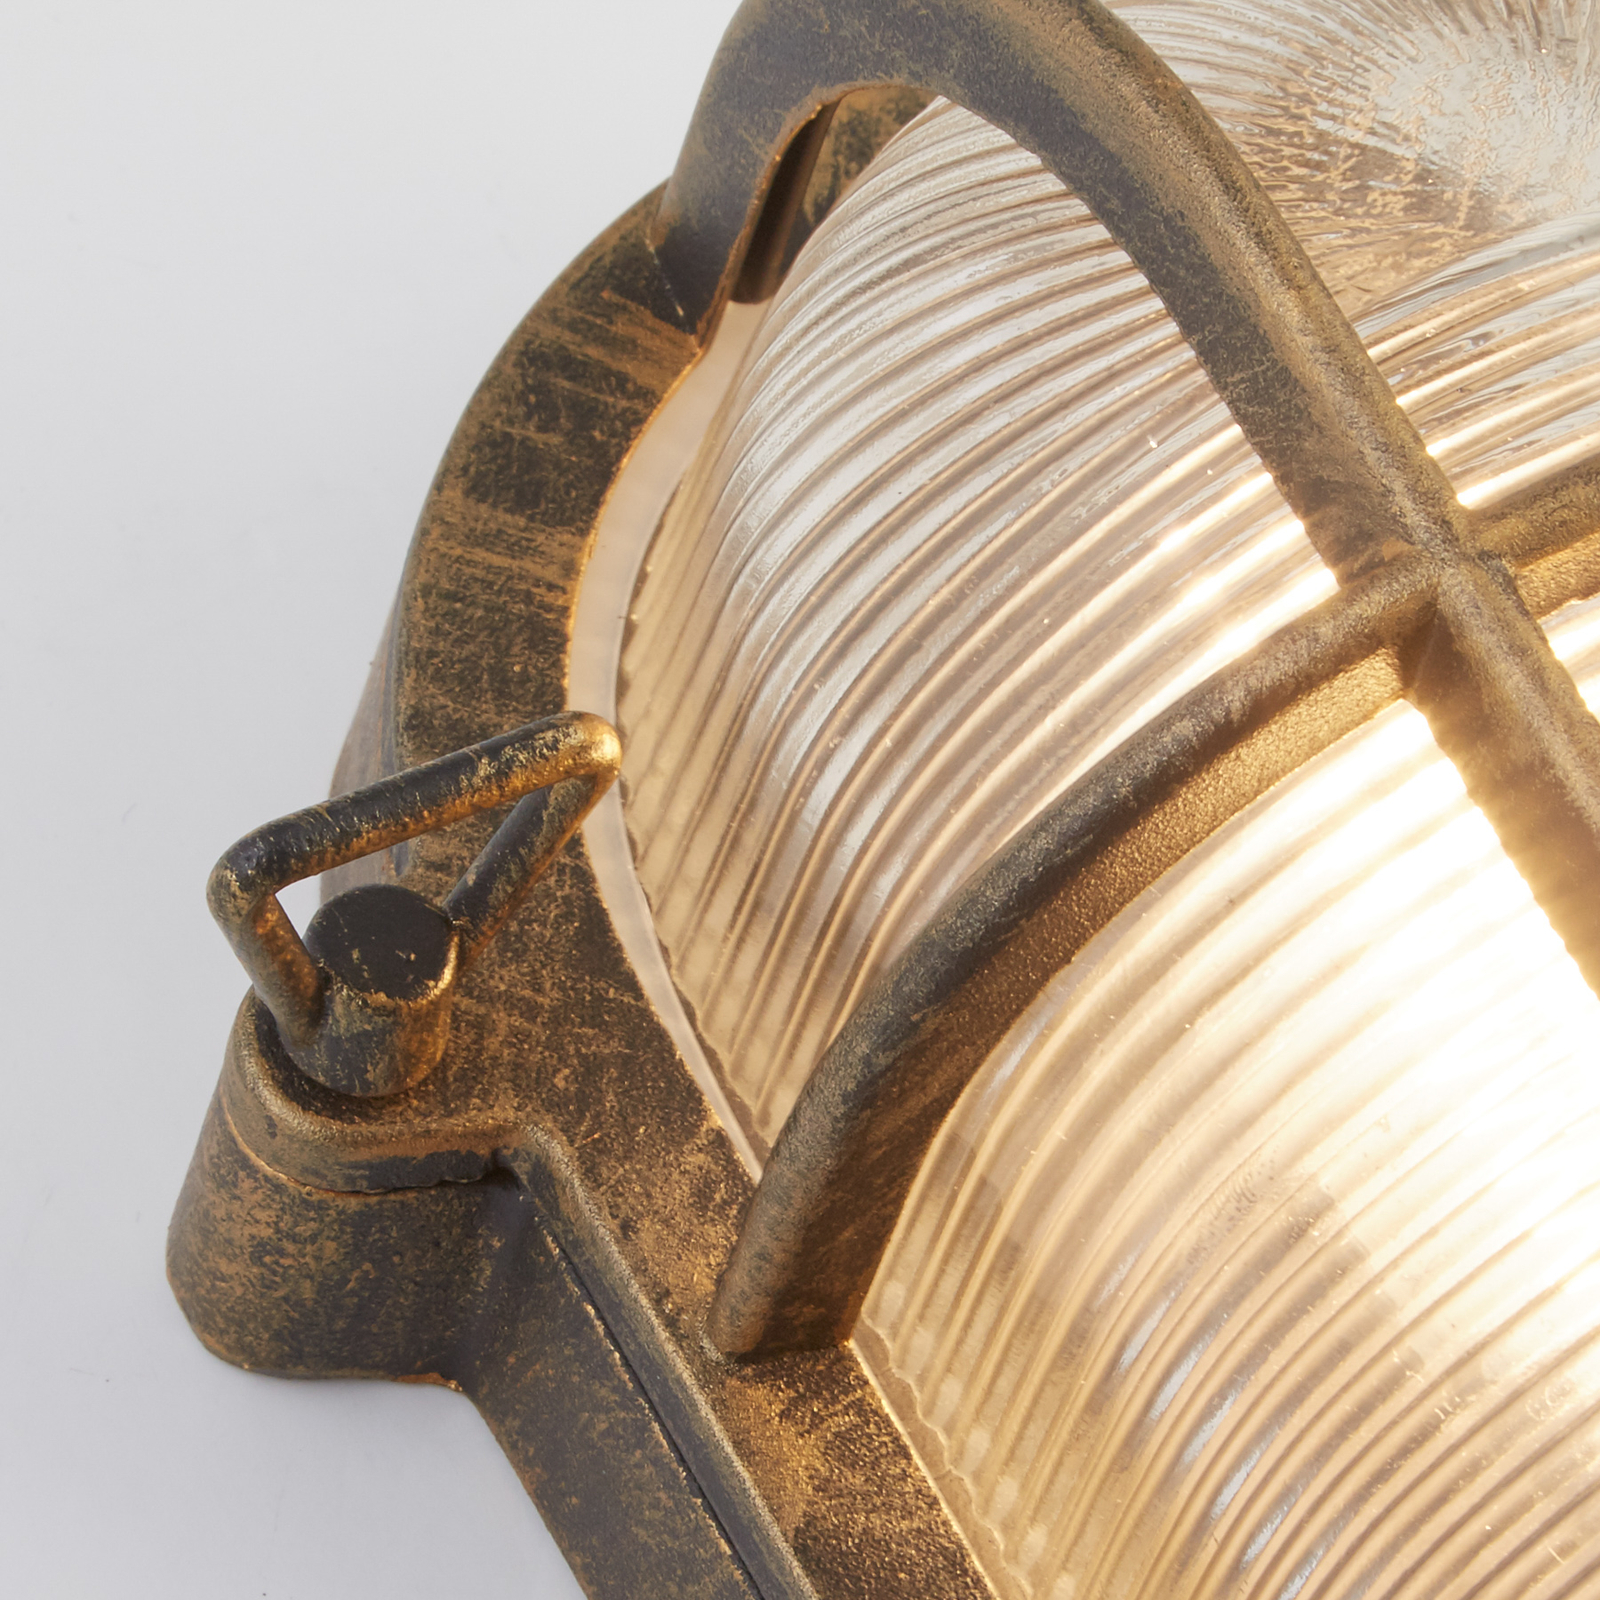 Lampa w stylu morskim Porto owalna, czarno-złota